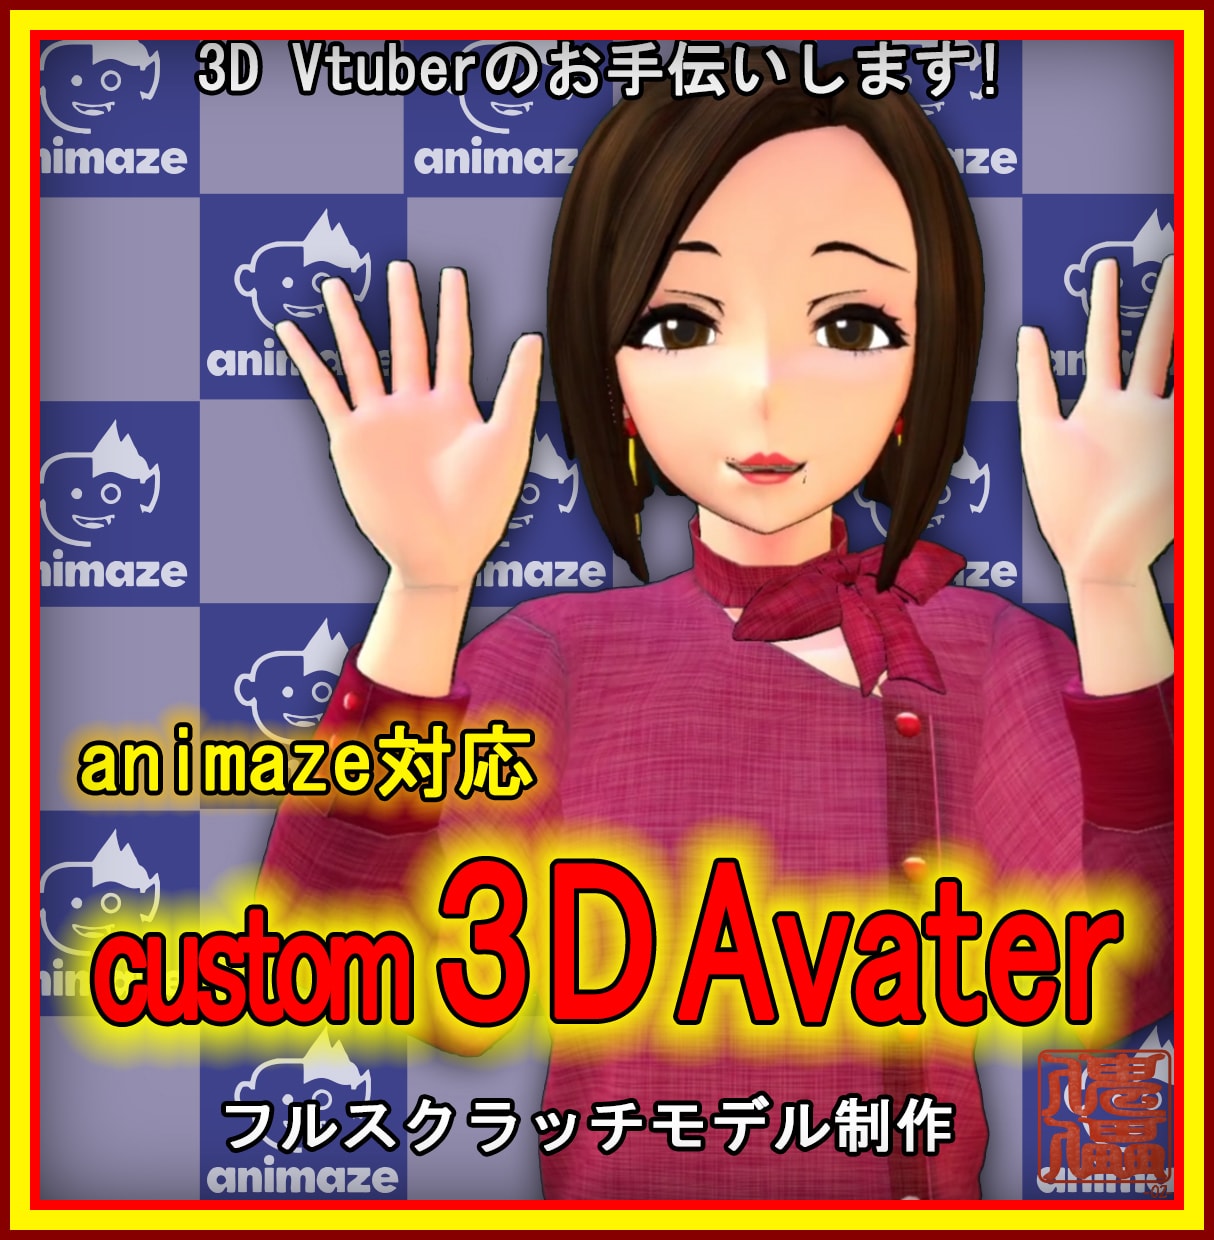 Animaze対応3DVtuber作ります Live2Dではできないアバター表現が可能 イメージ1